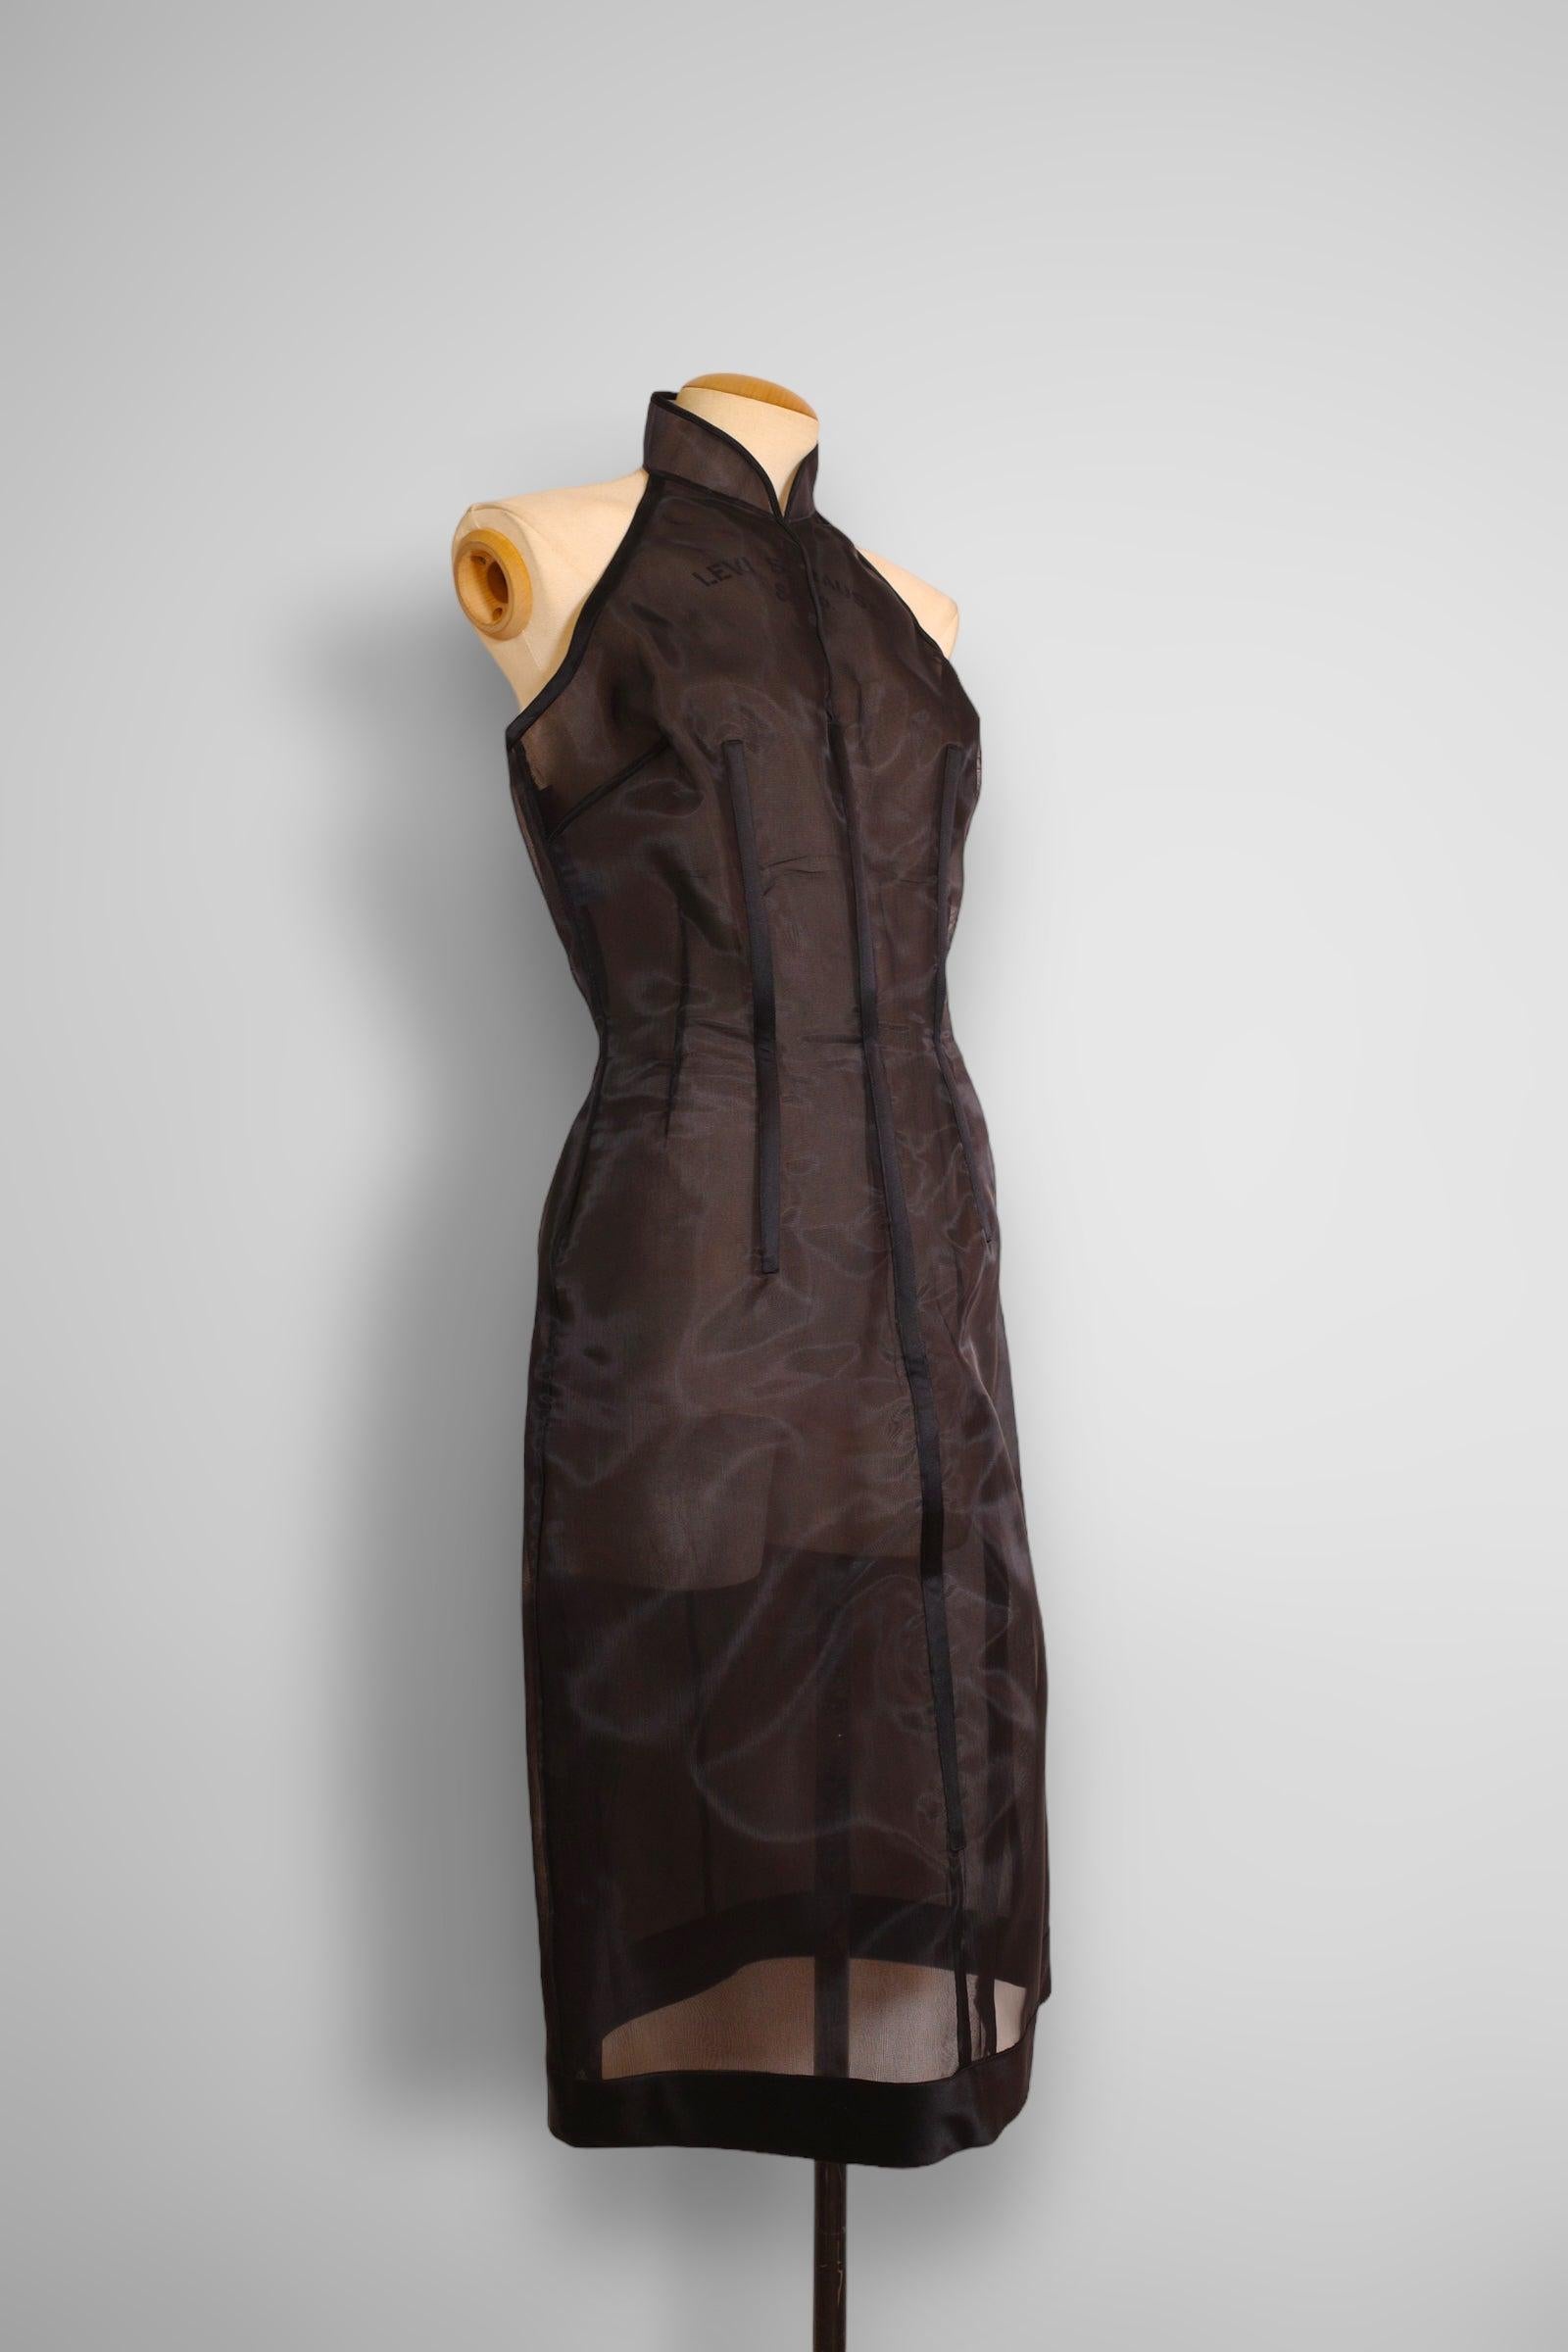 Women's Prada 1995ss final look boned dress For Sale